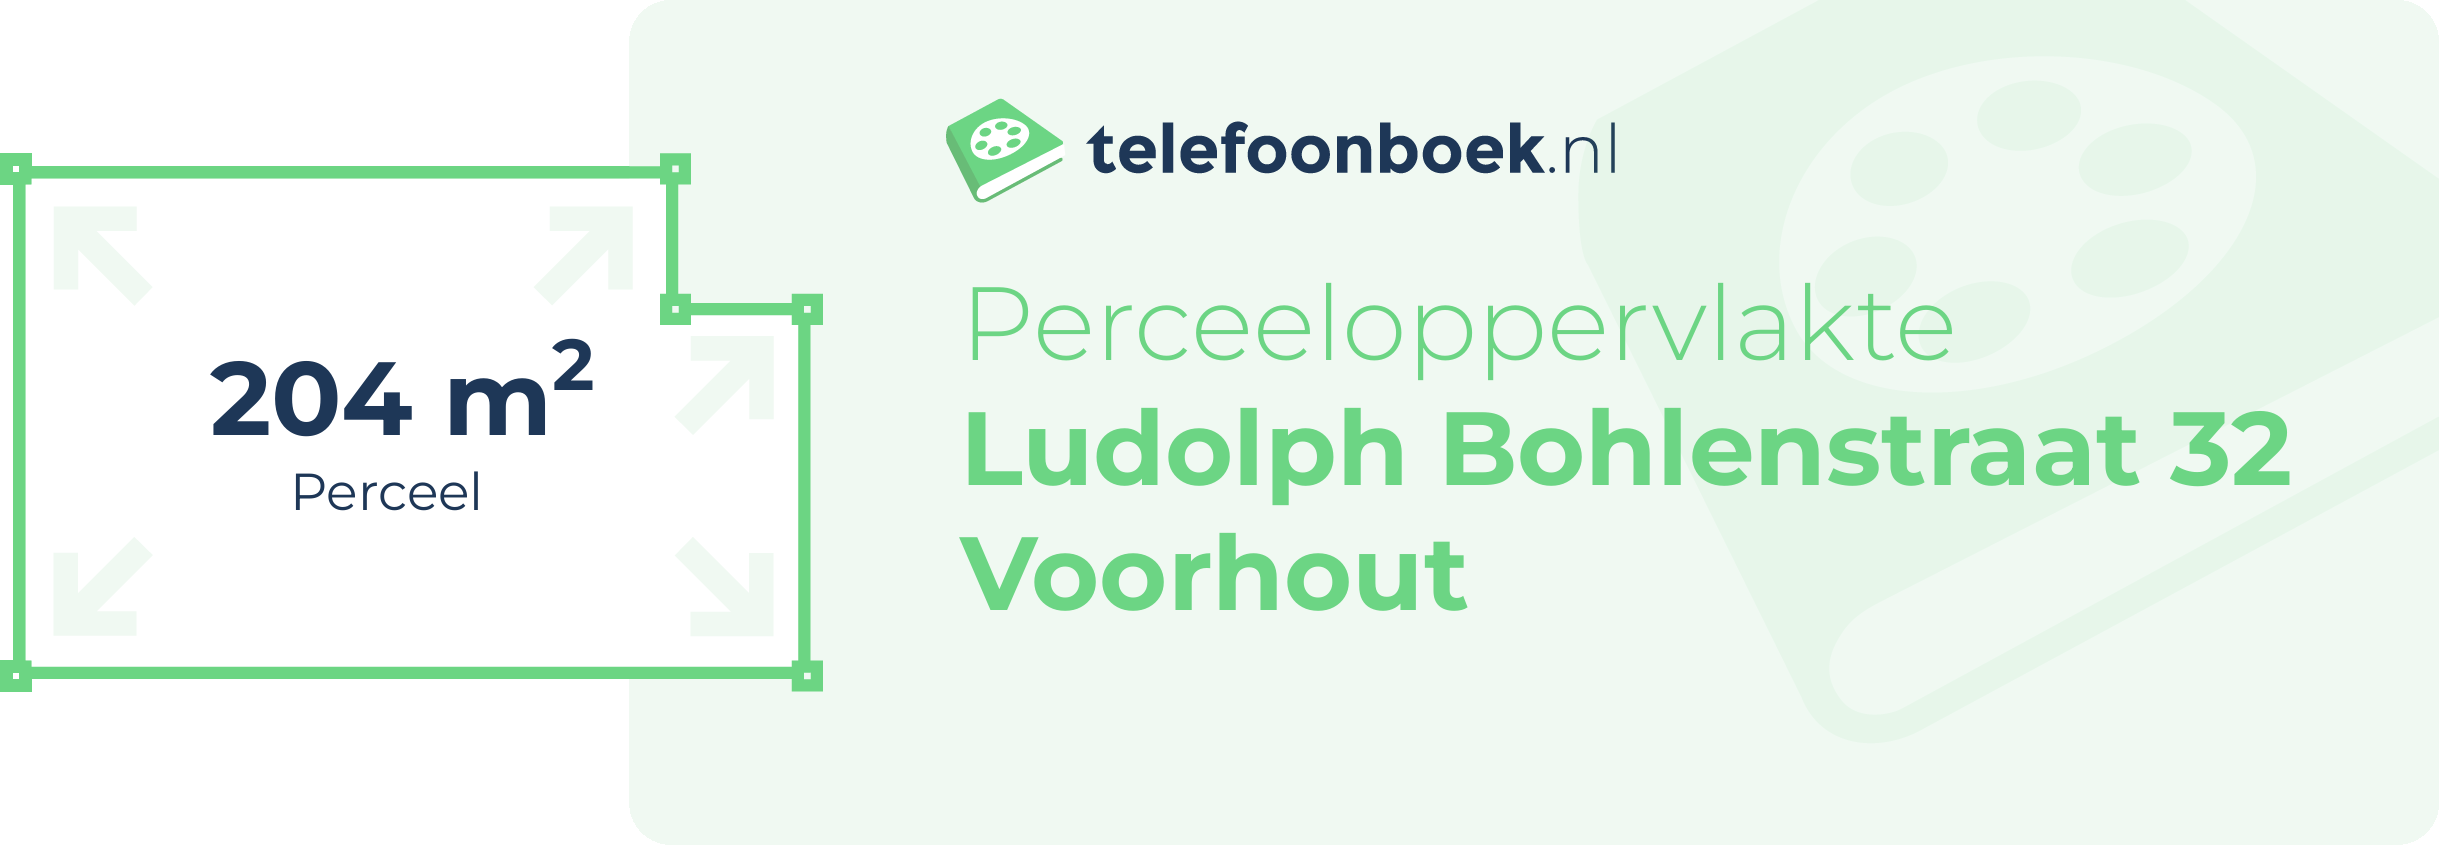 Perceeloppervlakte Ludolph Bohlenstraat 32 Voorhout